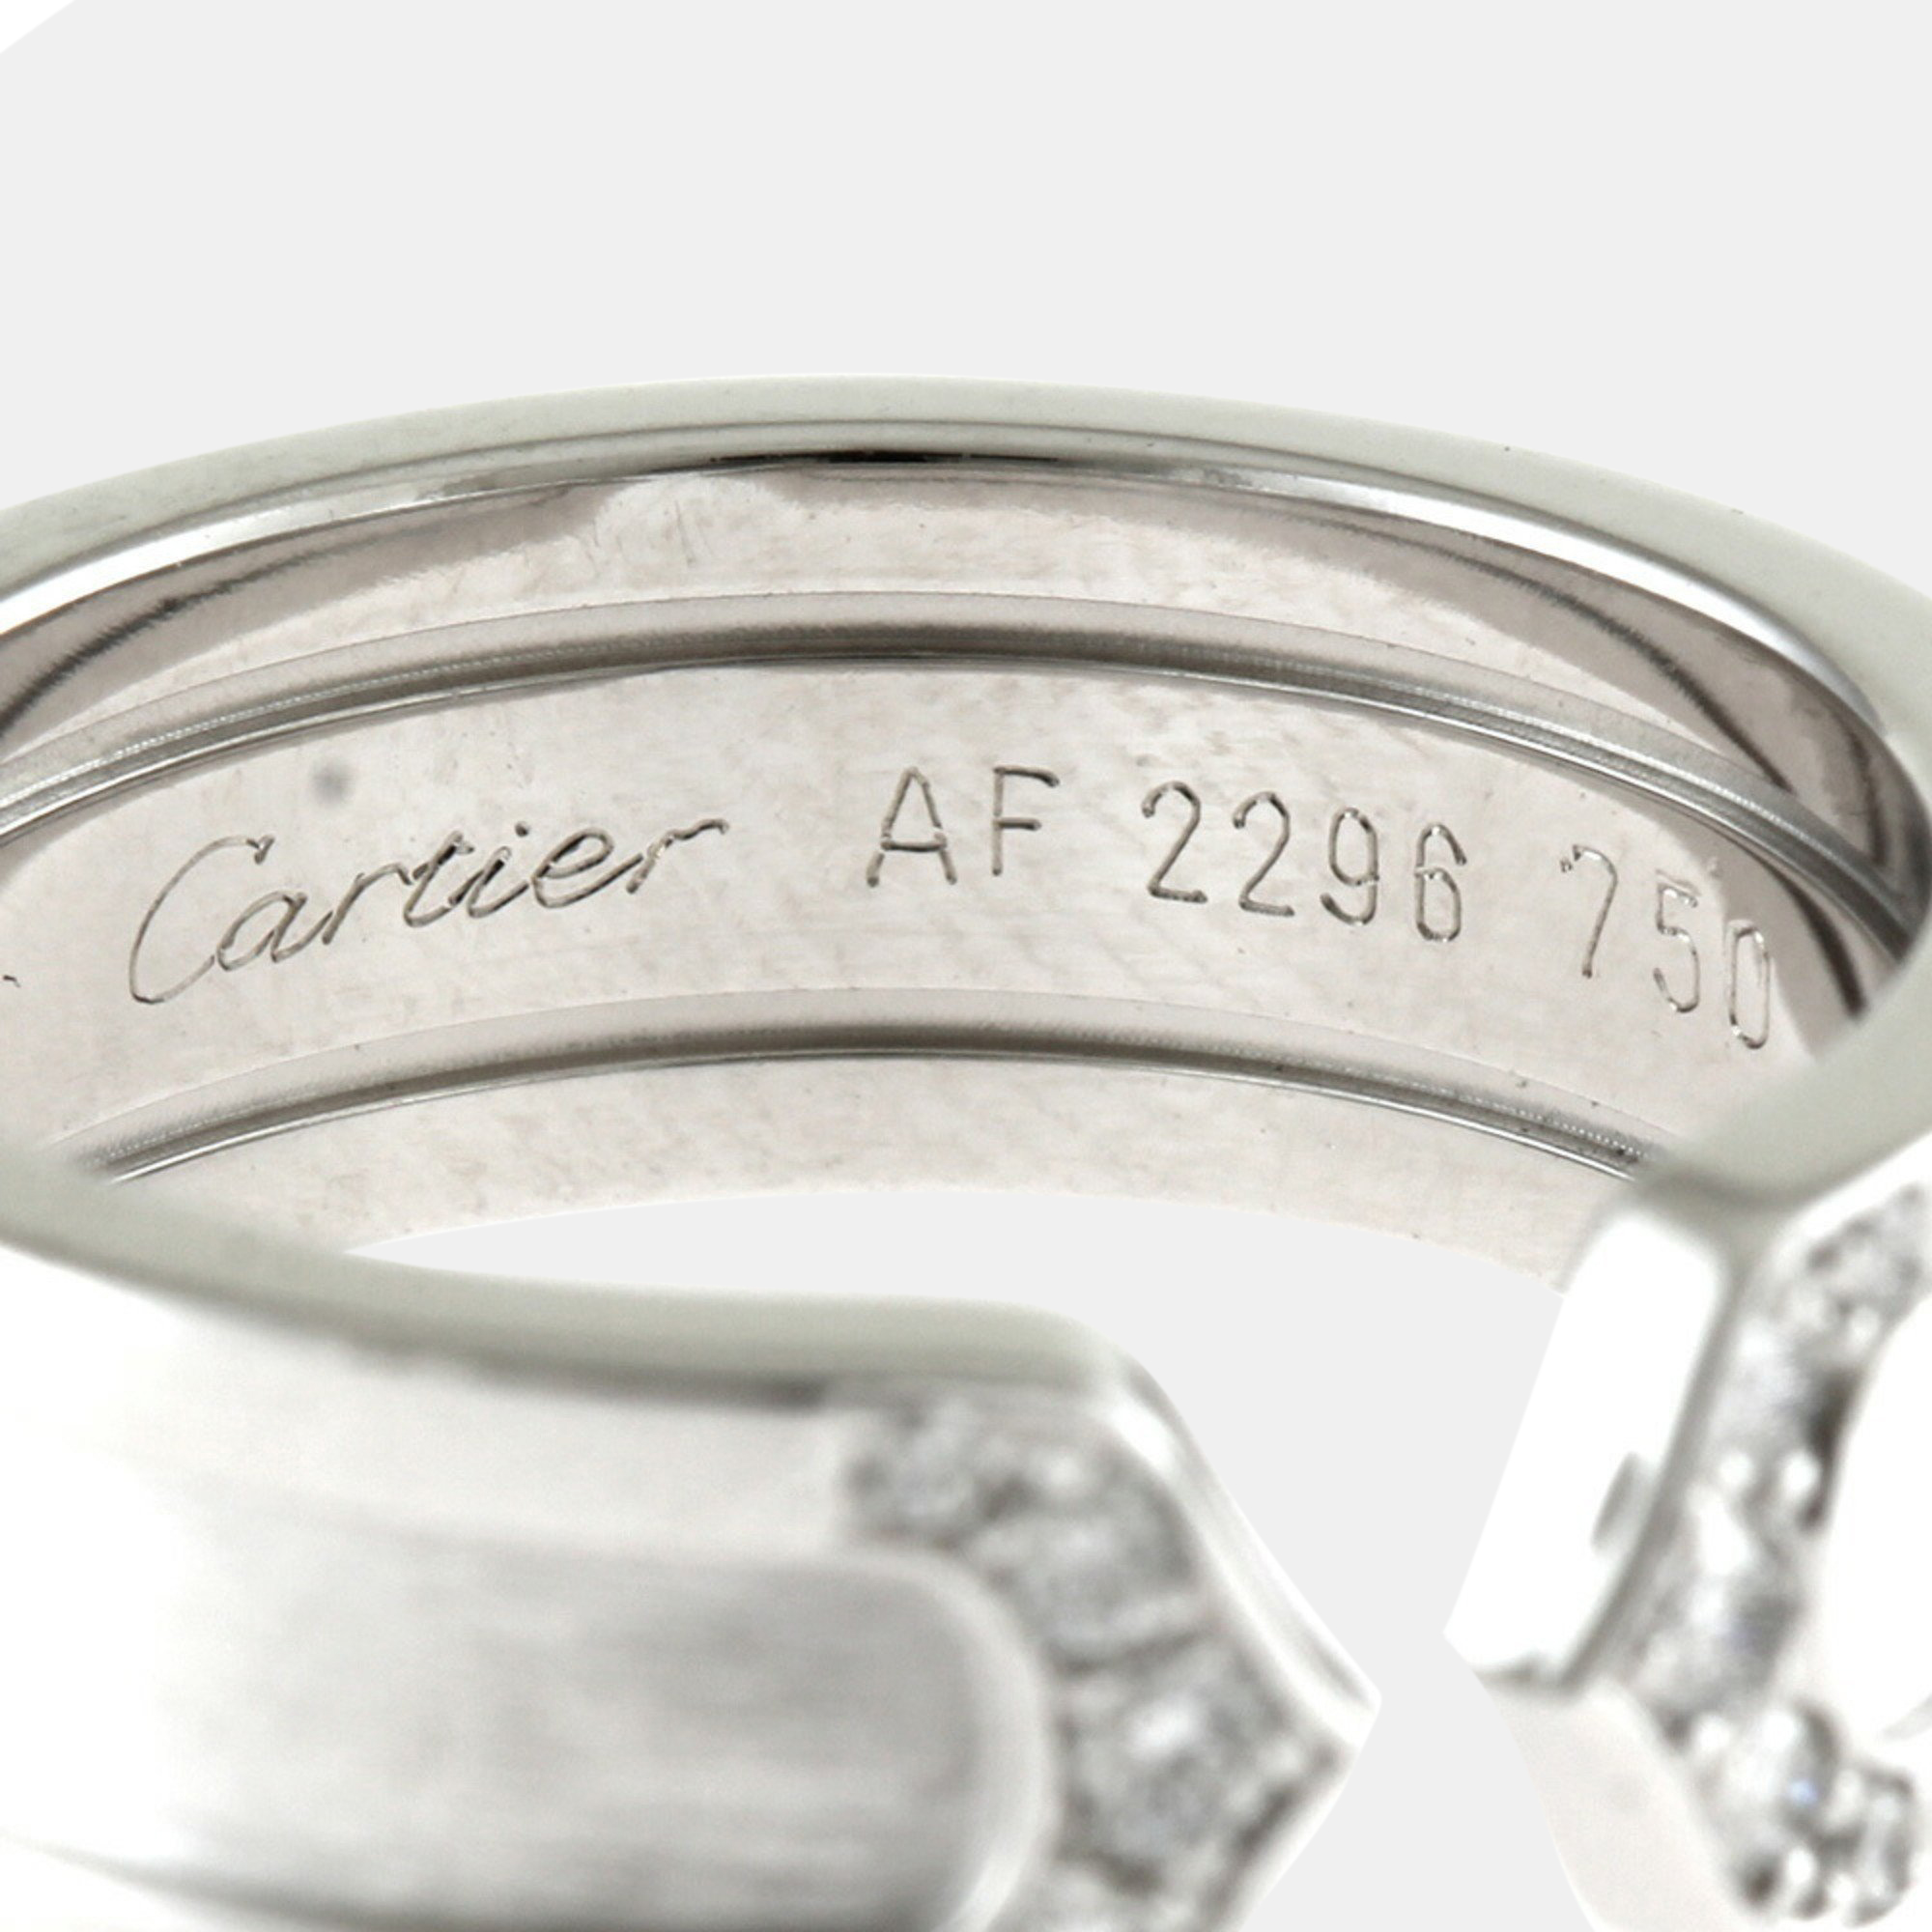 Cartier 18K White Gold And Diamond Double C De Cartier Wedding Band Ring EU 62